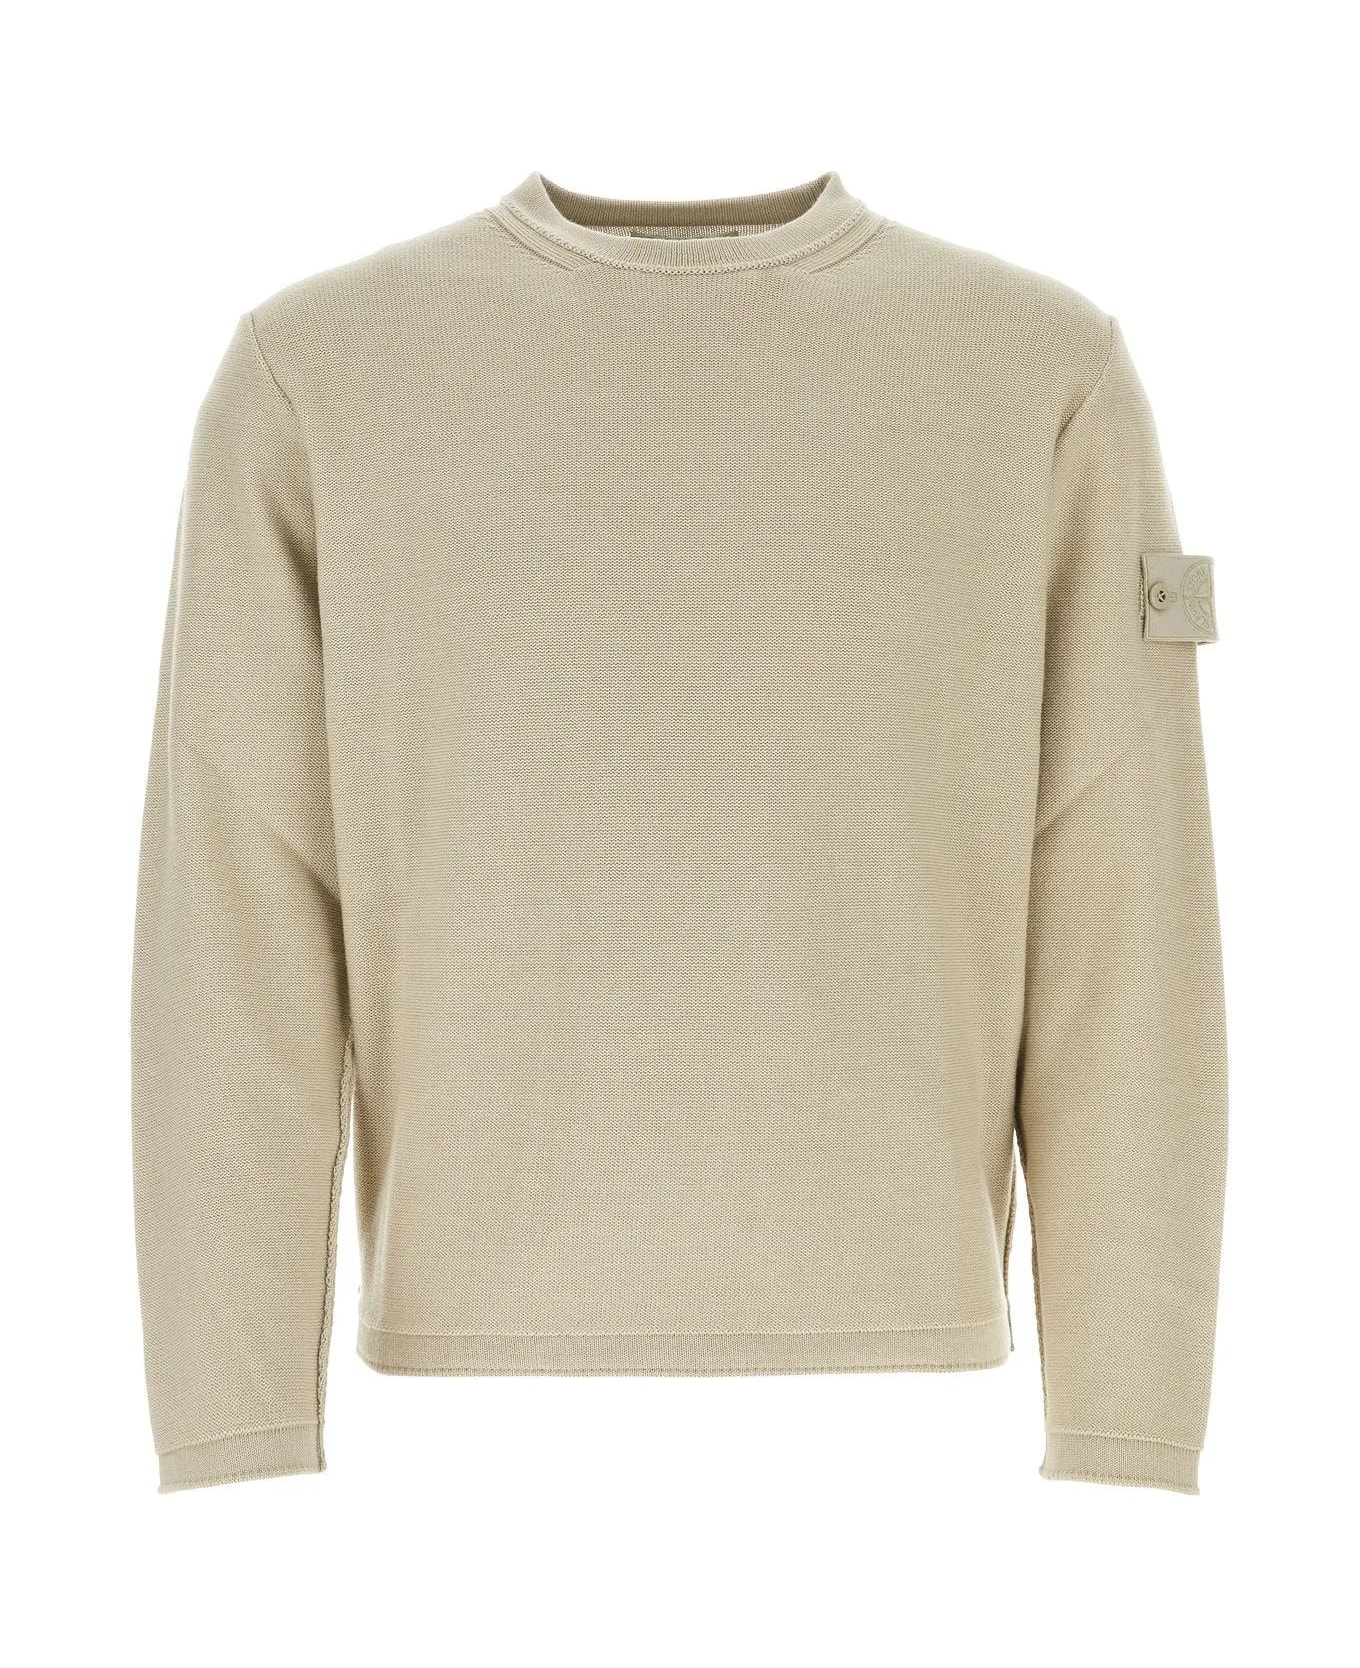 Stone Island Sand Cotton Blend Sweater - NEUTRALS